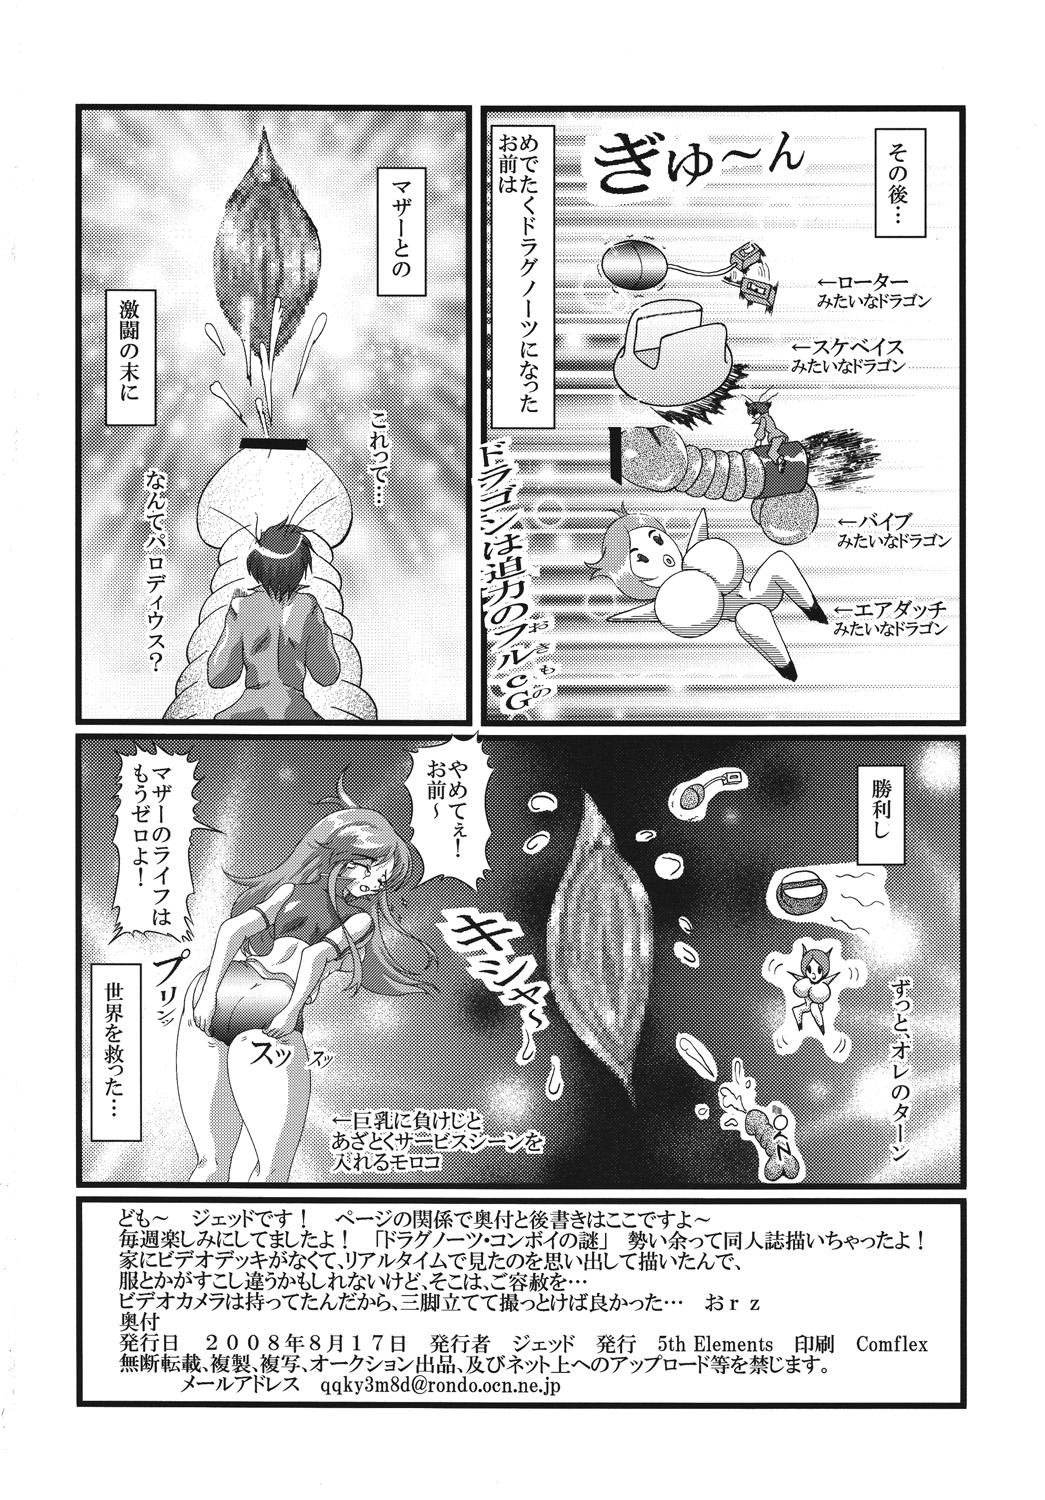 Vergon Doragon no aru kurashi - Dragonaut Fucking Girls - Page 21